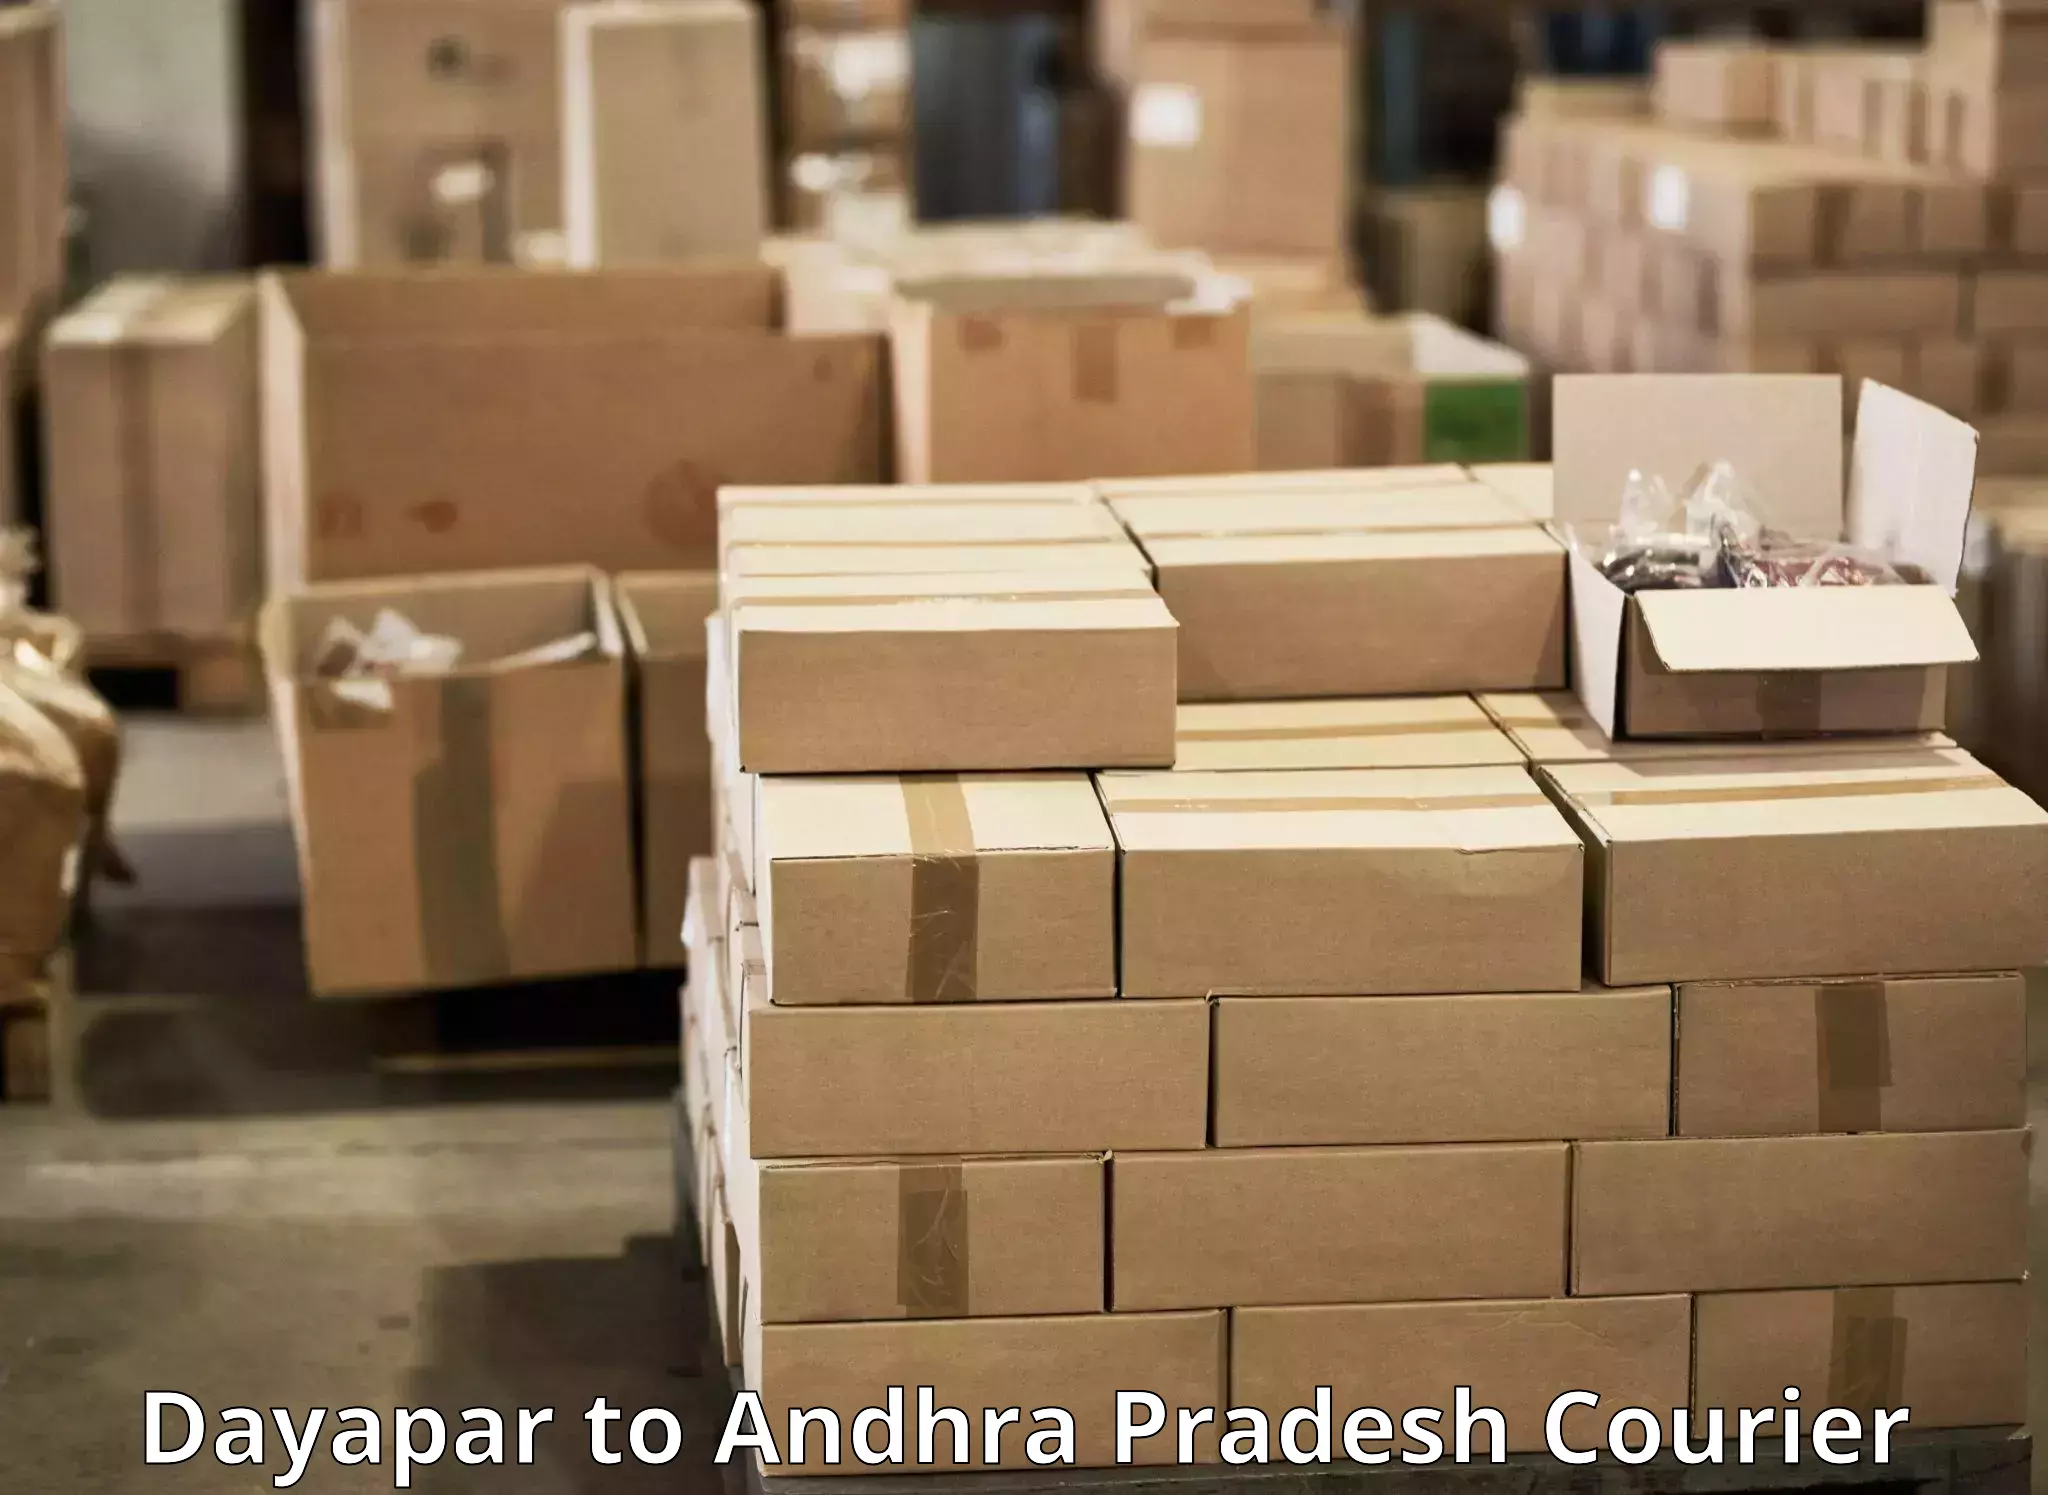 Express delivery solutions Dayapar to Veldurthi